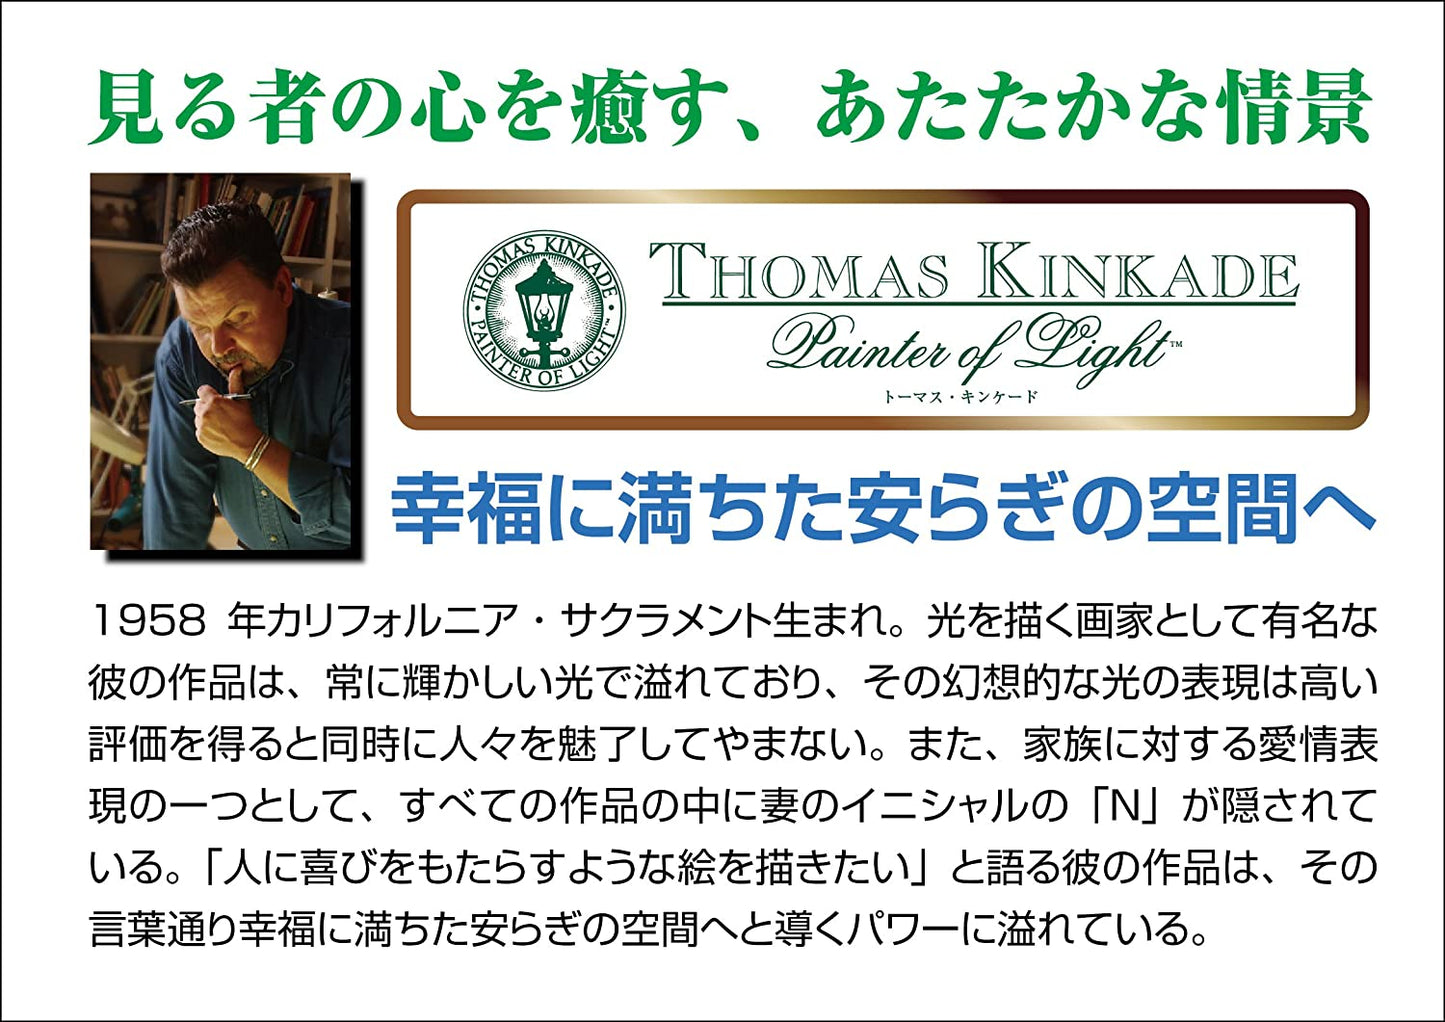 (迷你尺寸) (帆布紋理) Thomas Kinkade - 里維埃拉花開花咖啡館 1000塊 (26×38cm)